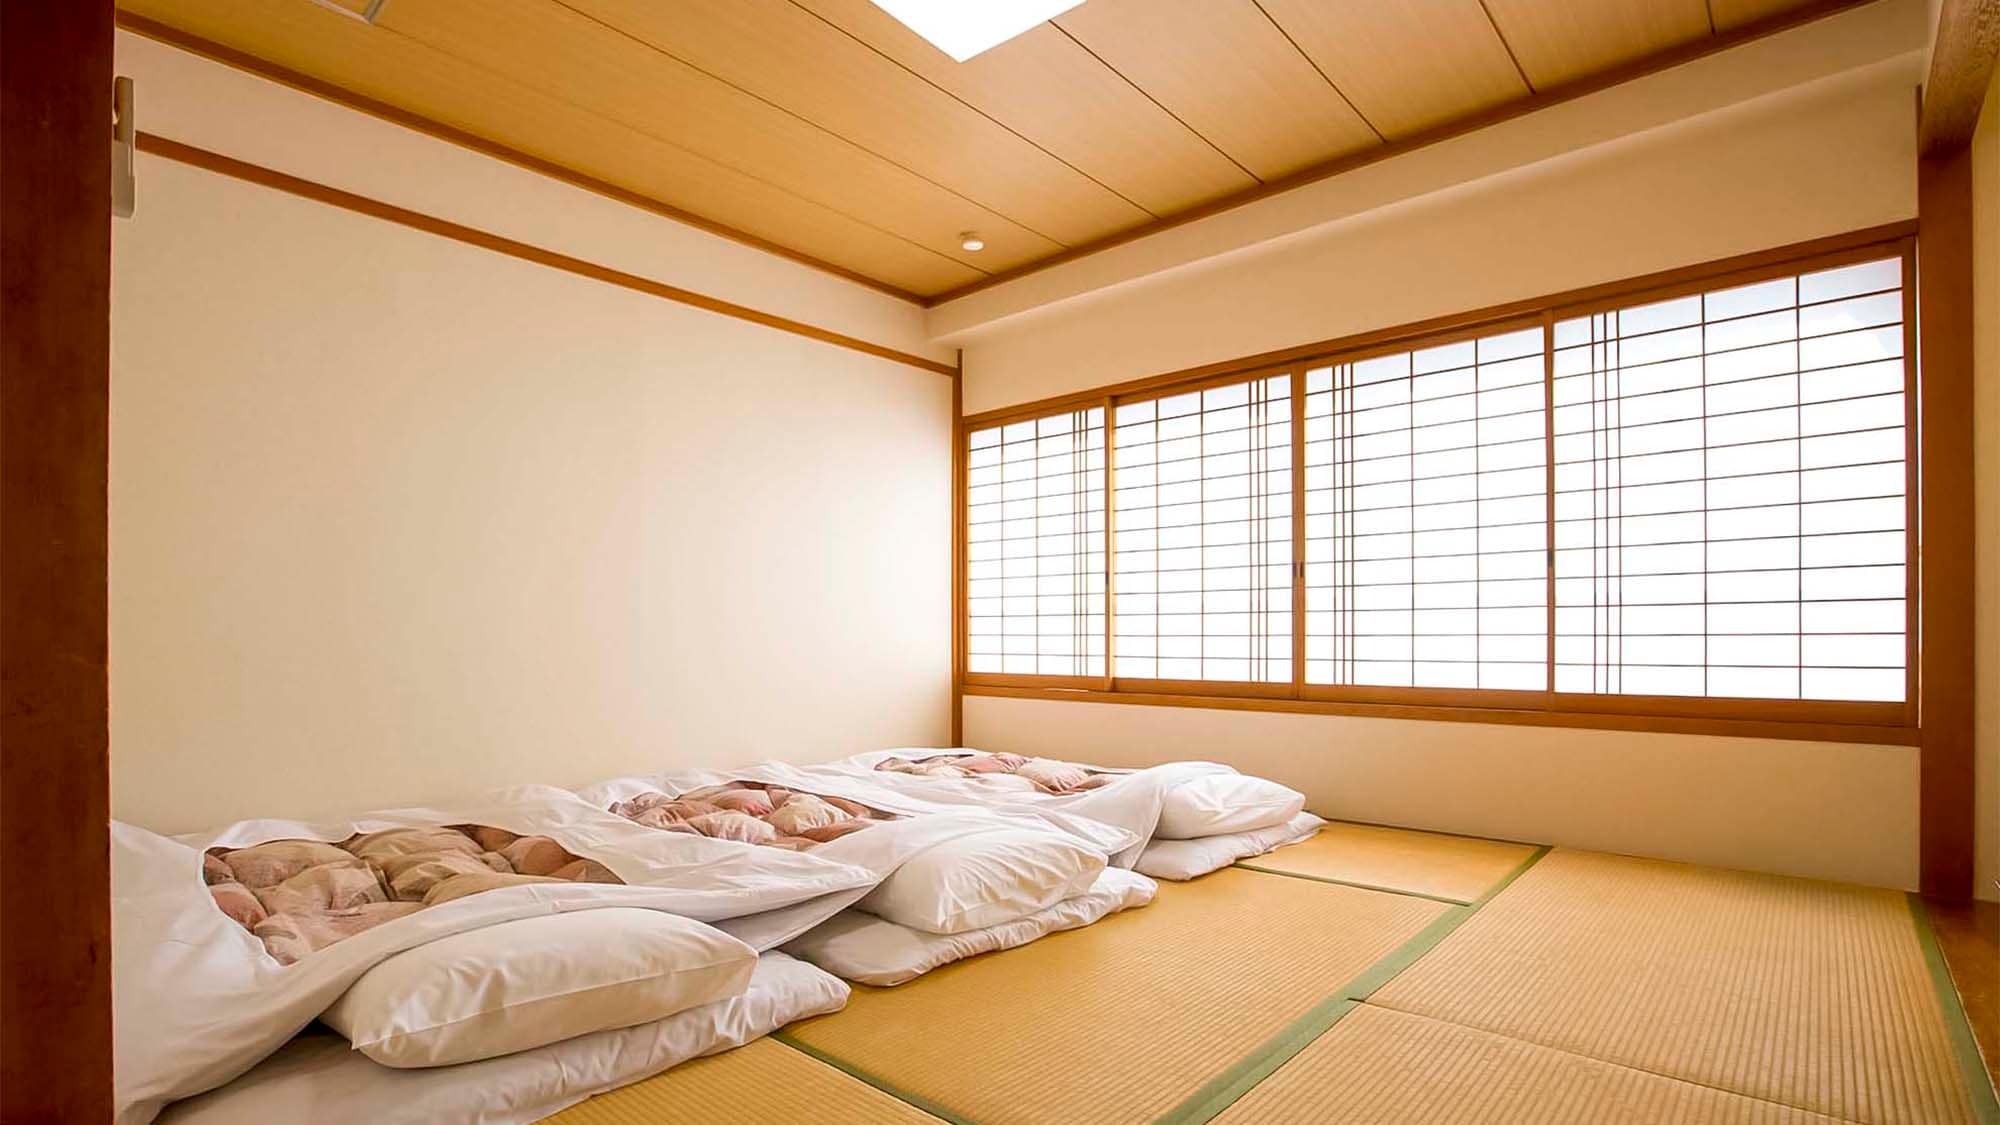 ・日式房間的例子：在寬敞的榻榻米上放鬆